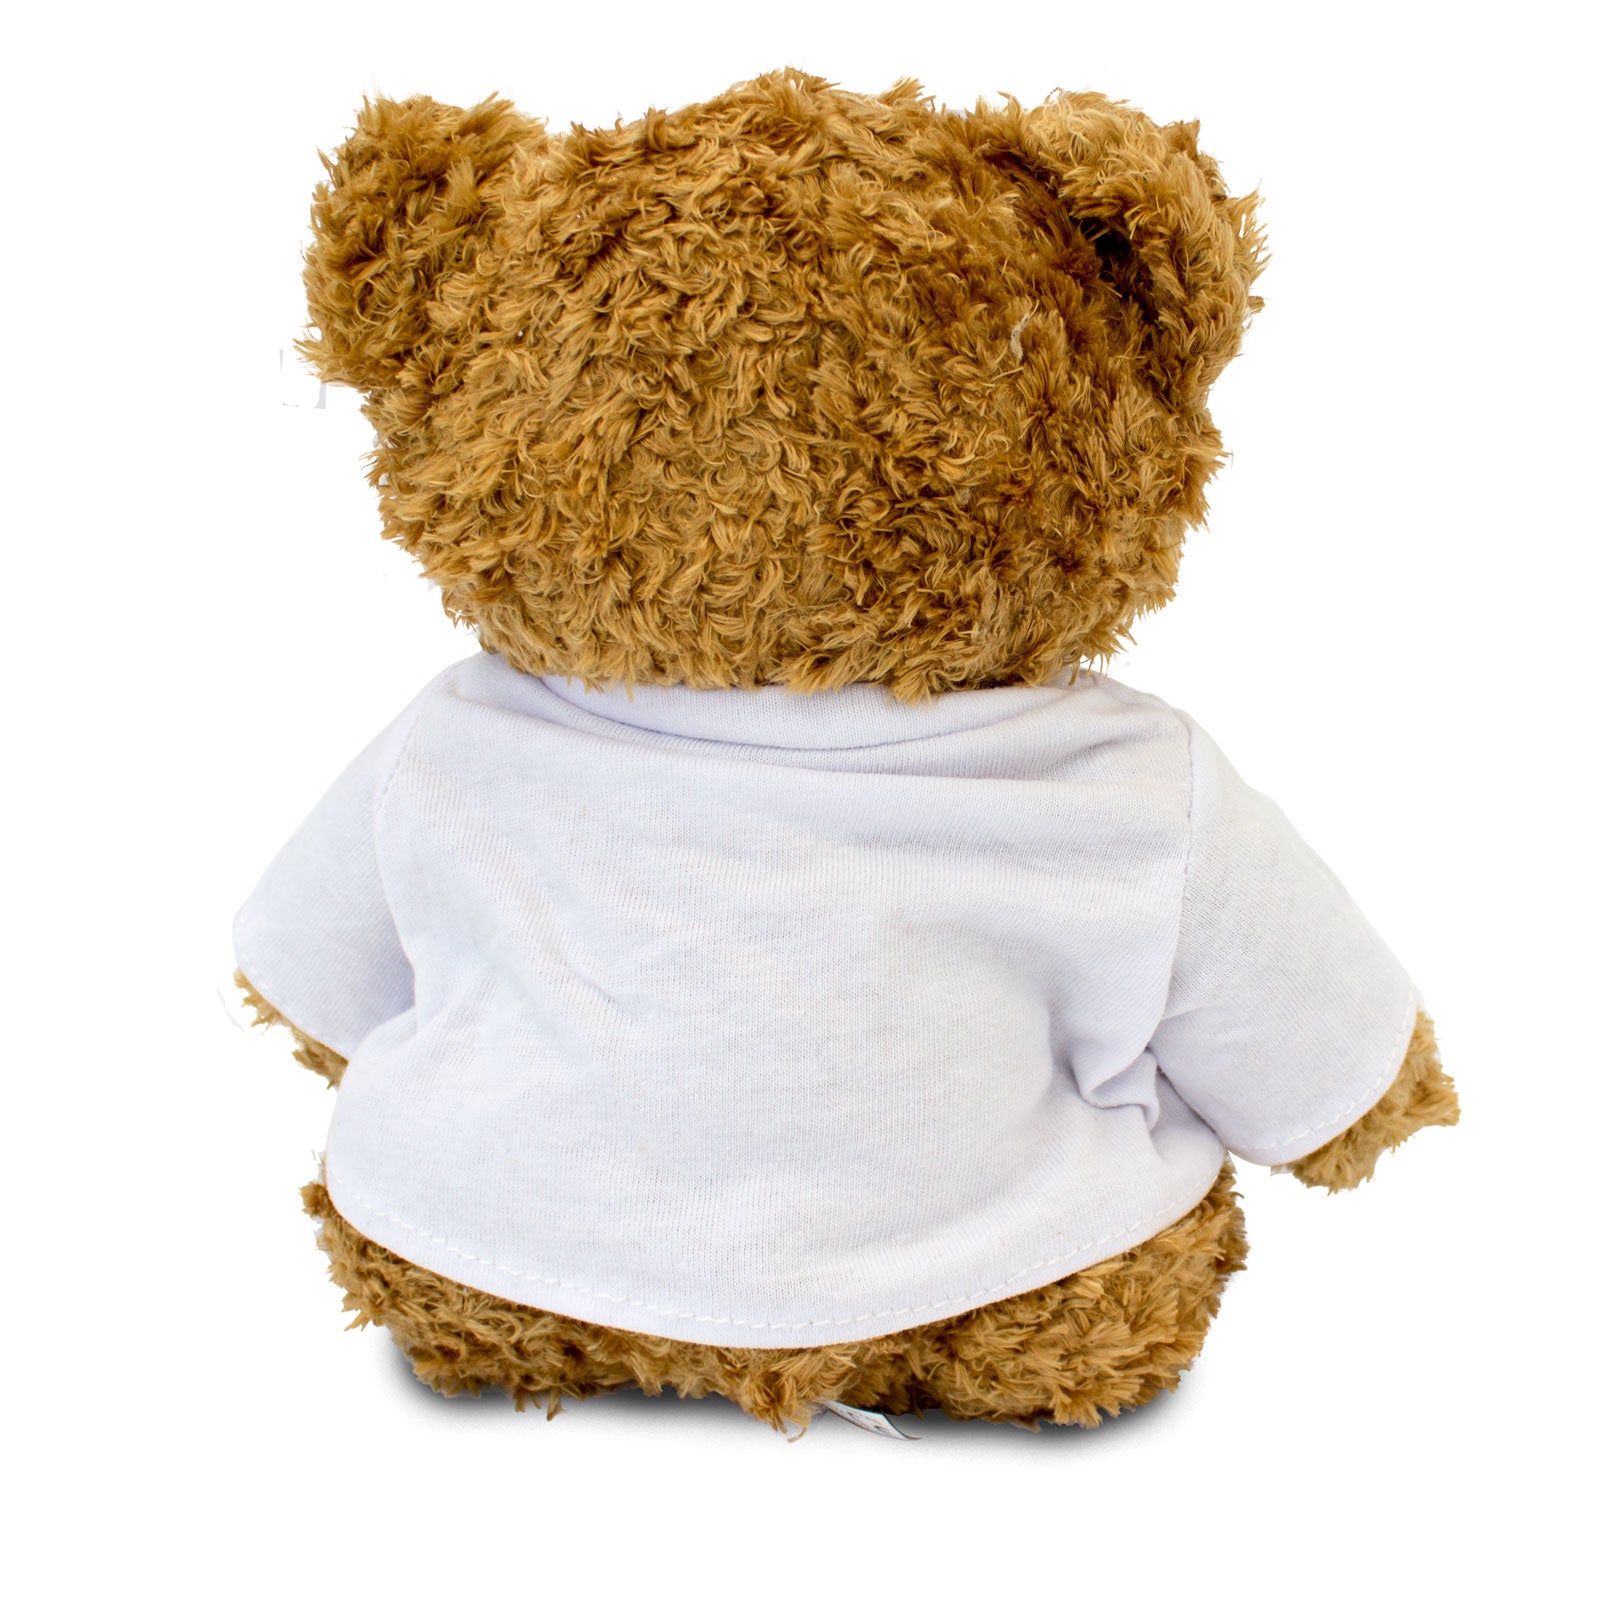 Get Well Soon Bradley - Teddy Bear